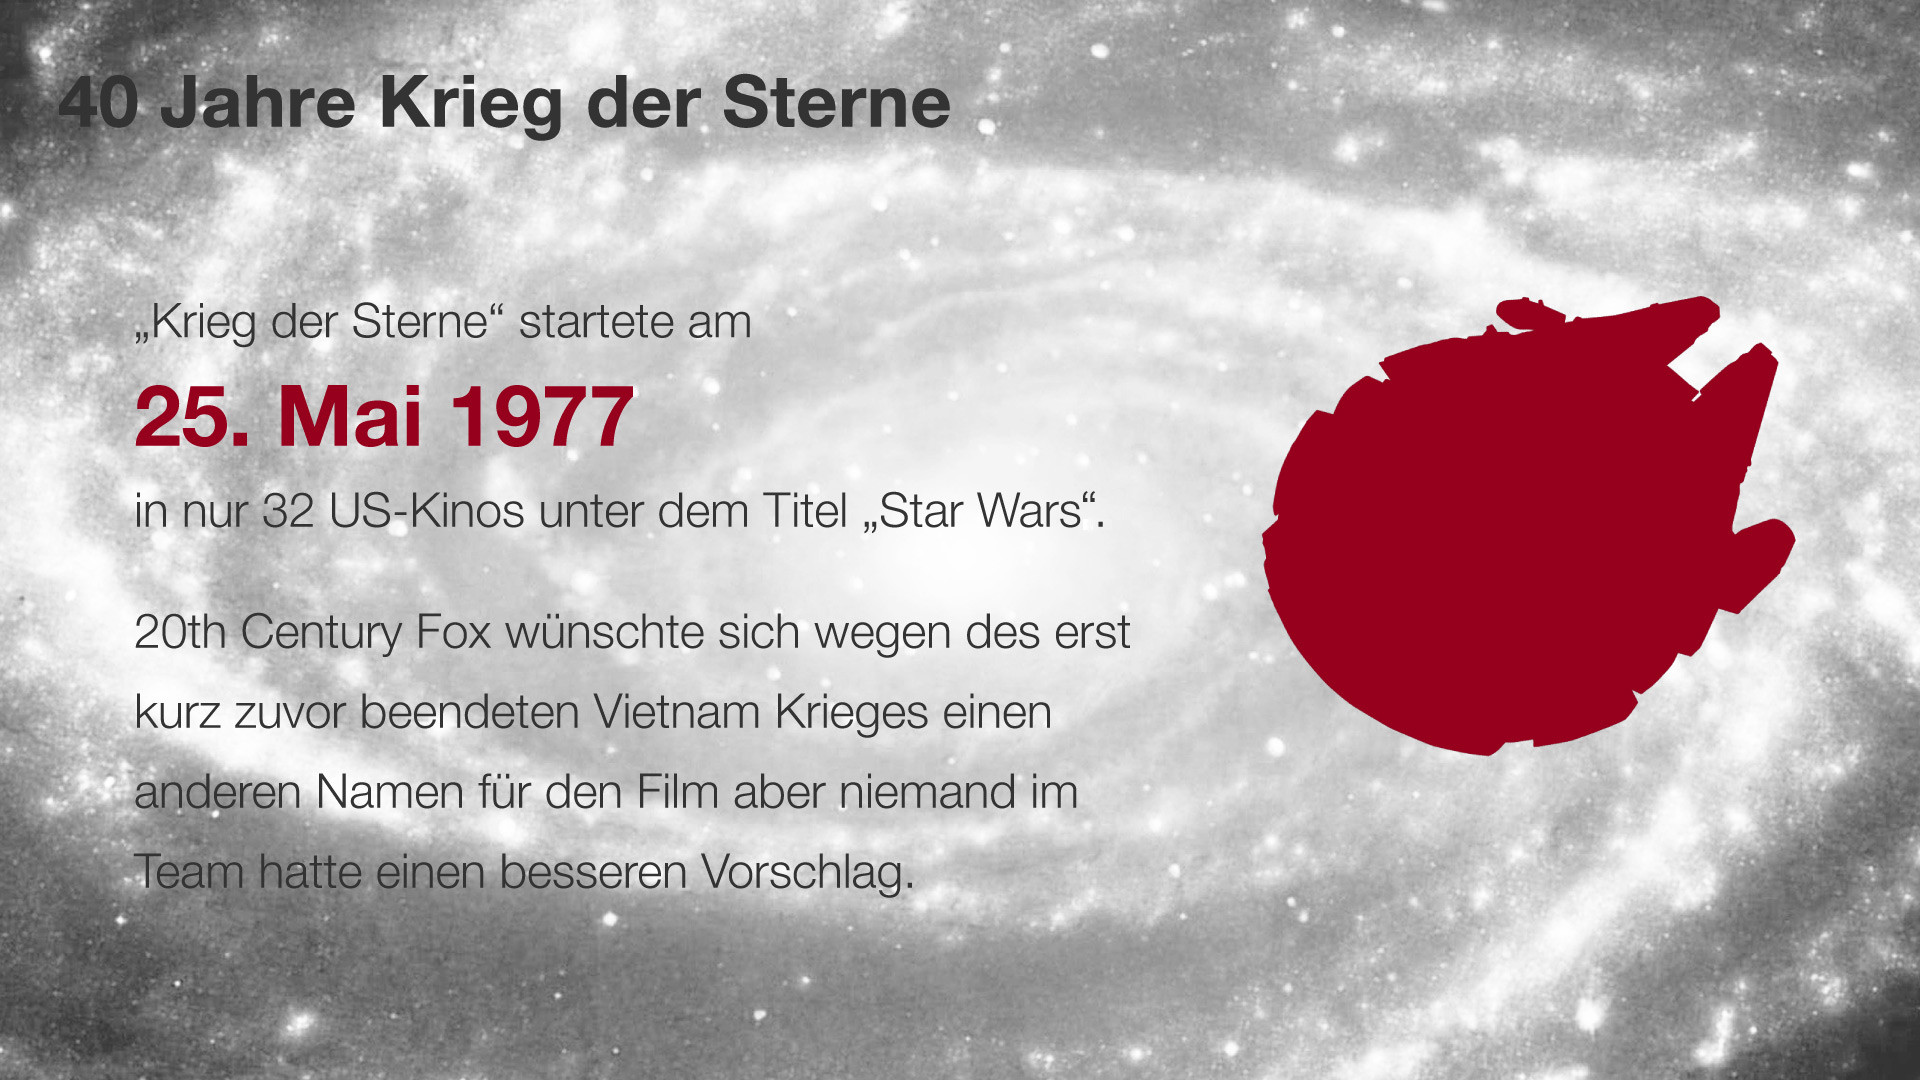 1920x1080 40 Jahre - Krieg der Sterne - Raumschiff